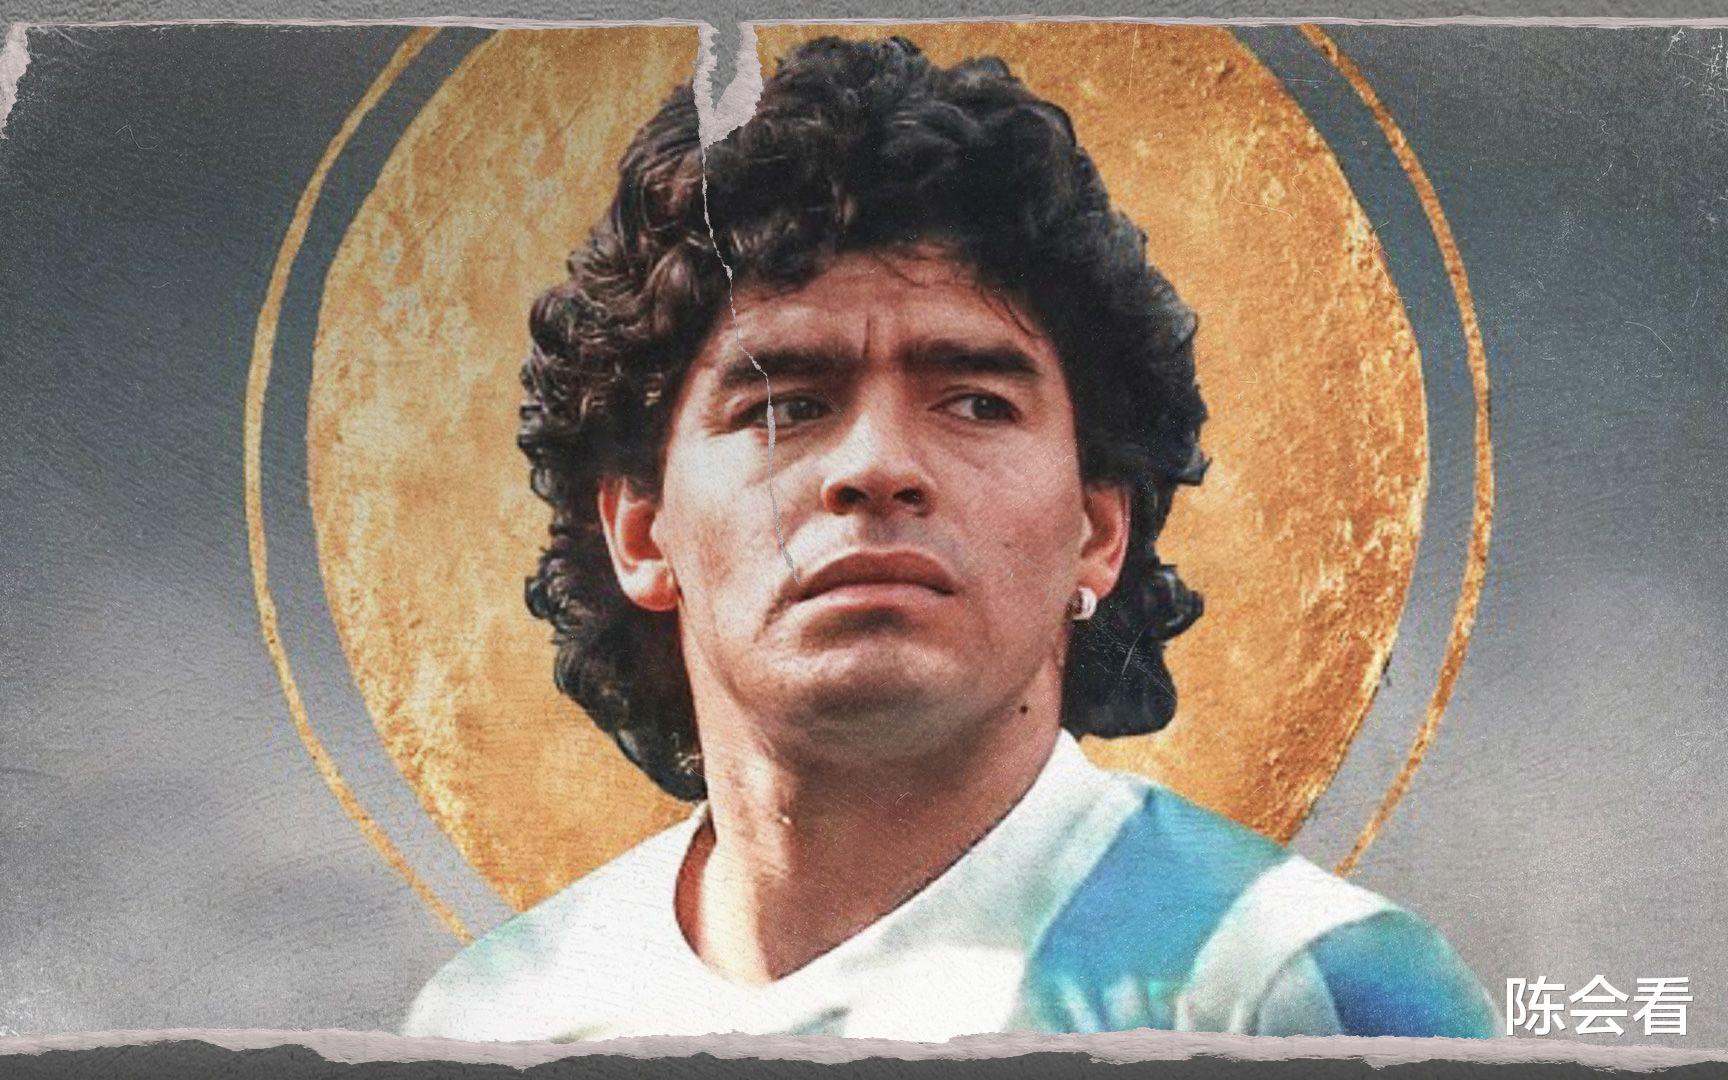 世界的球王，阿根廷之神，一身傲骨，魔鬼天使结合体——马拉多纳